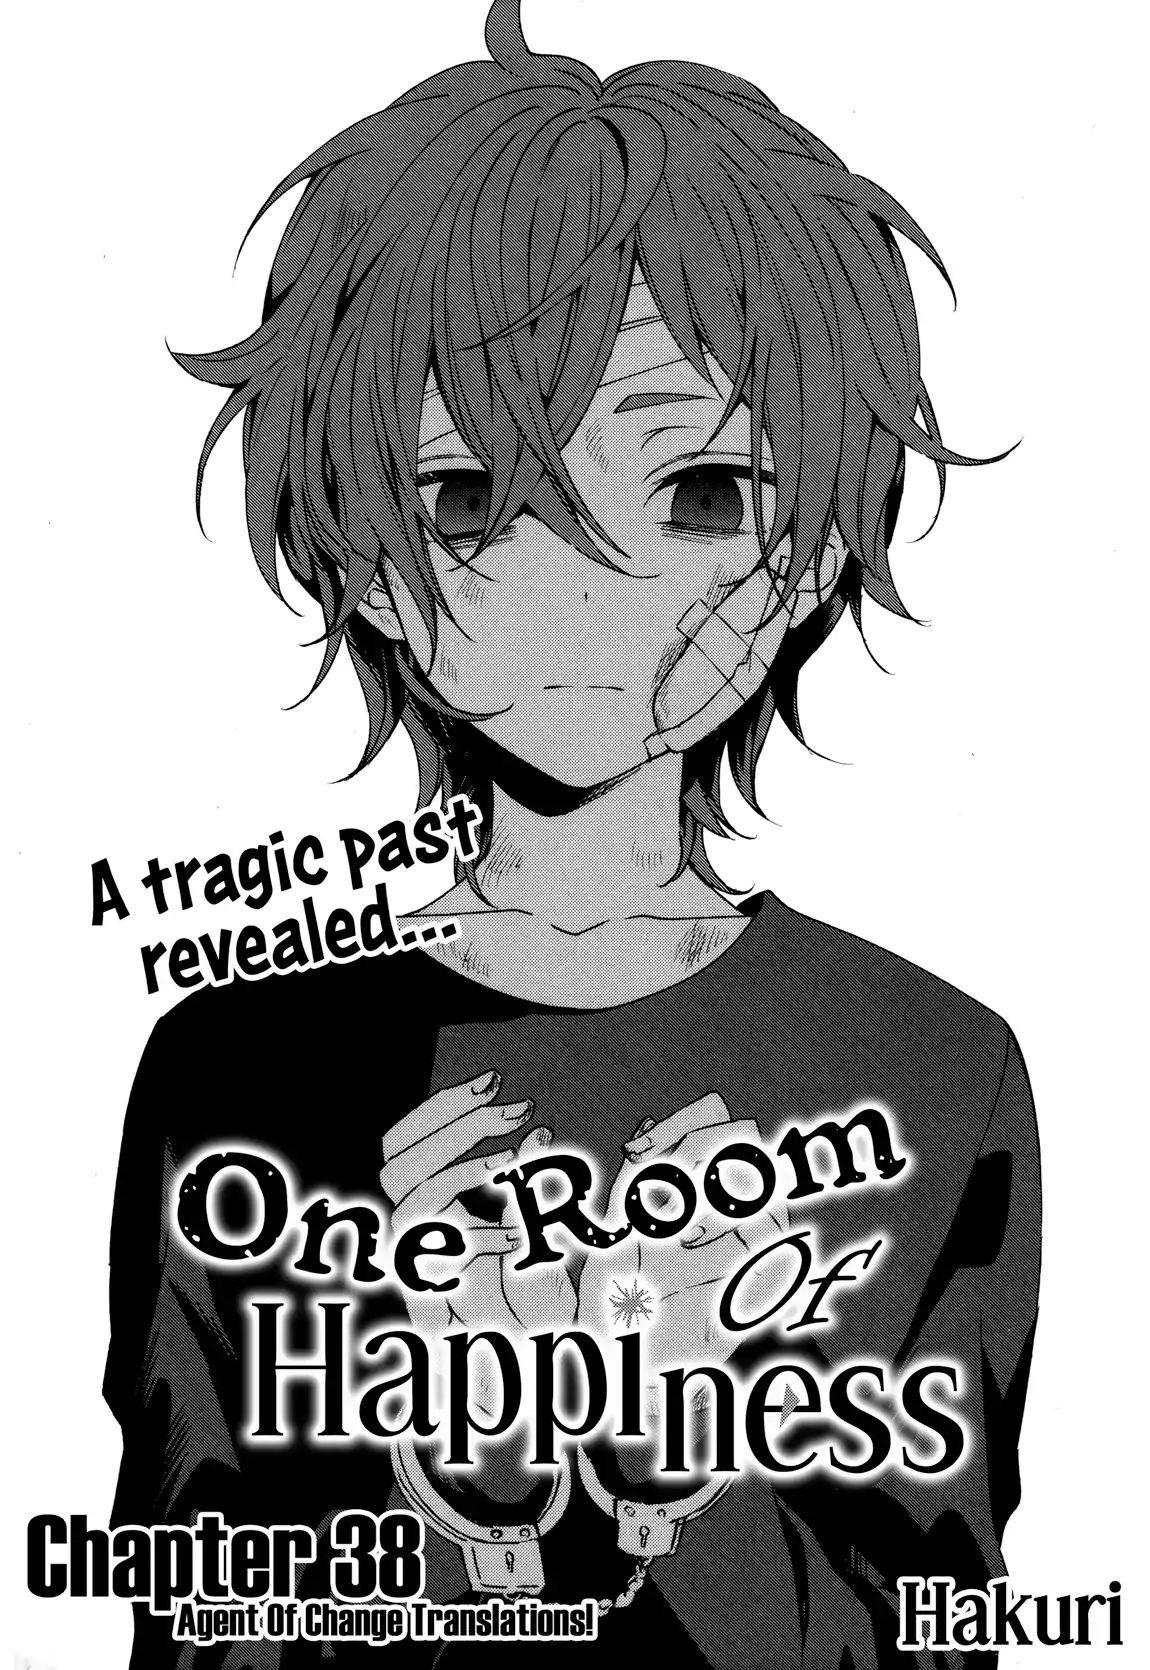 Manga Sachiiro No One Room Vol. 07 - Meccha Japan